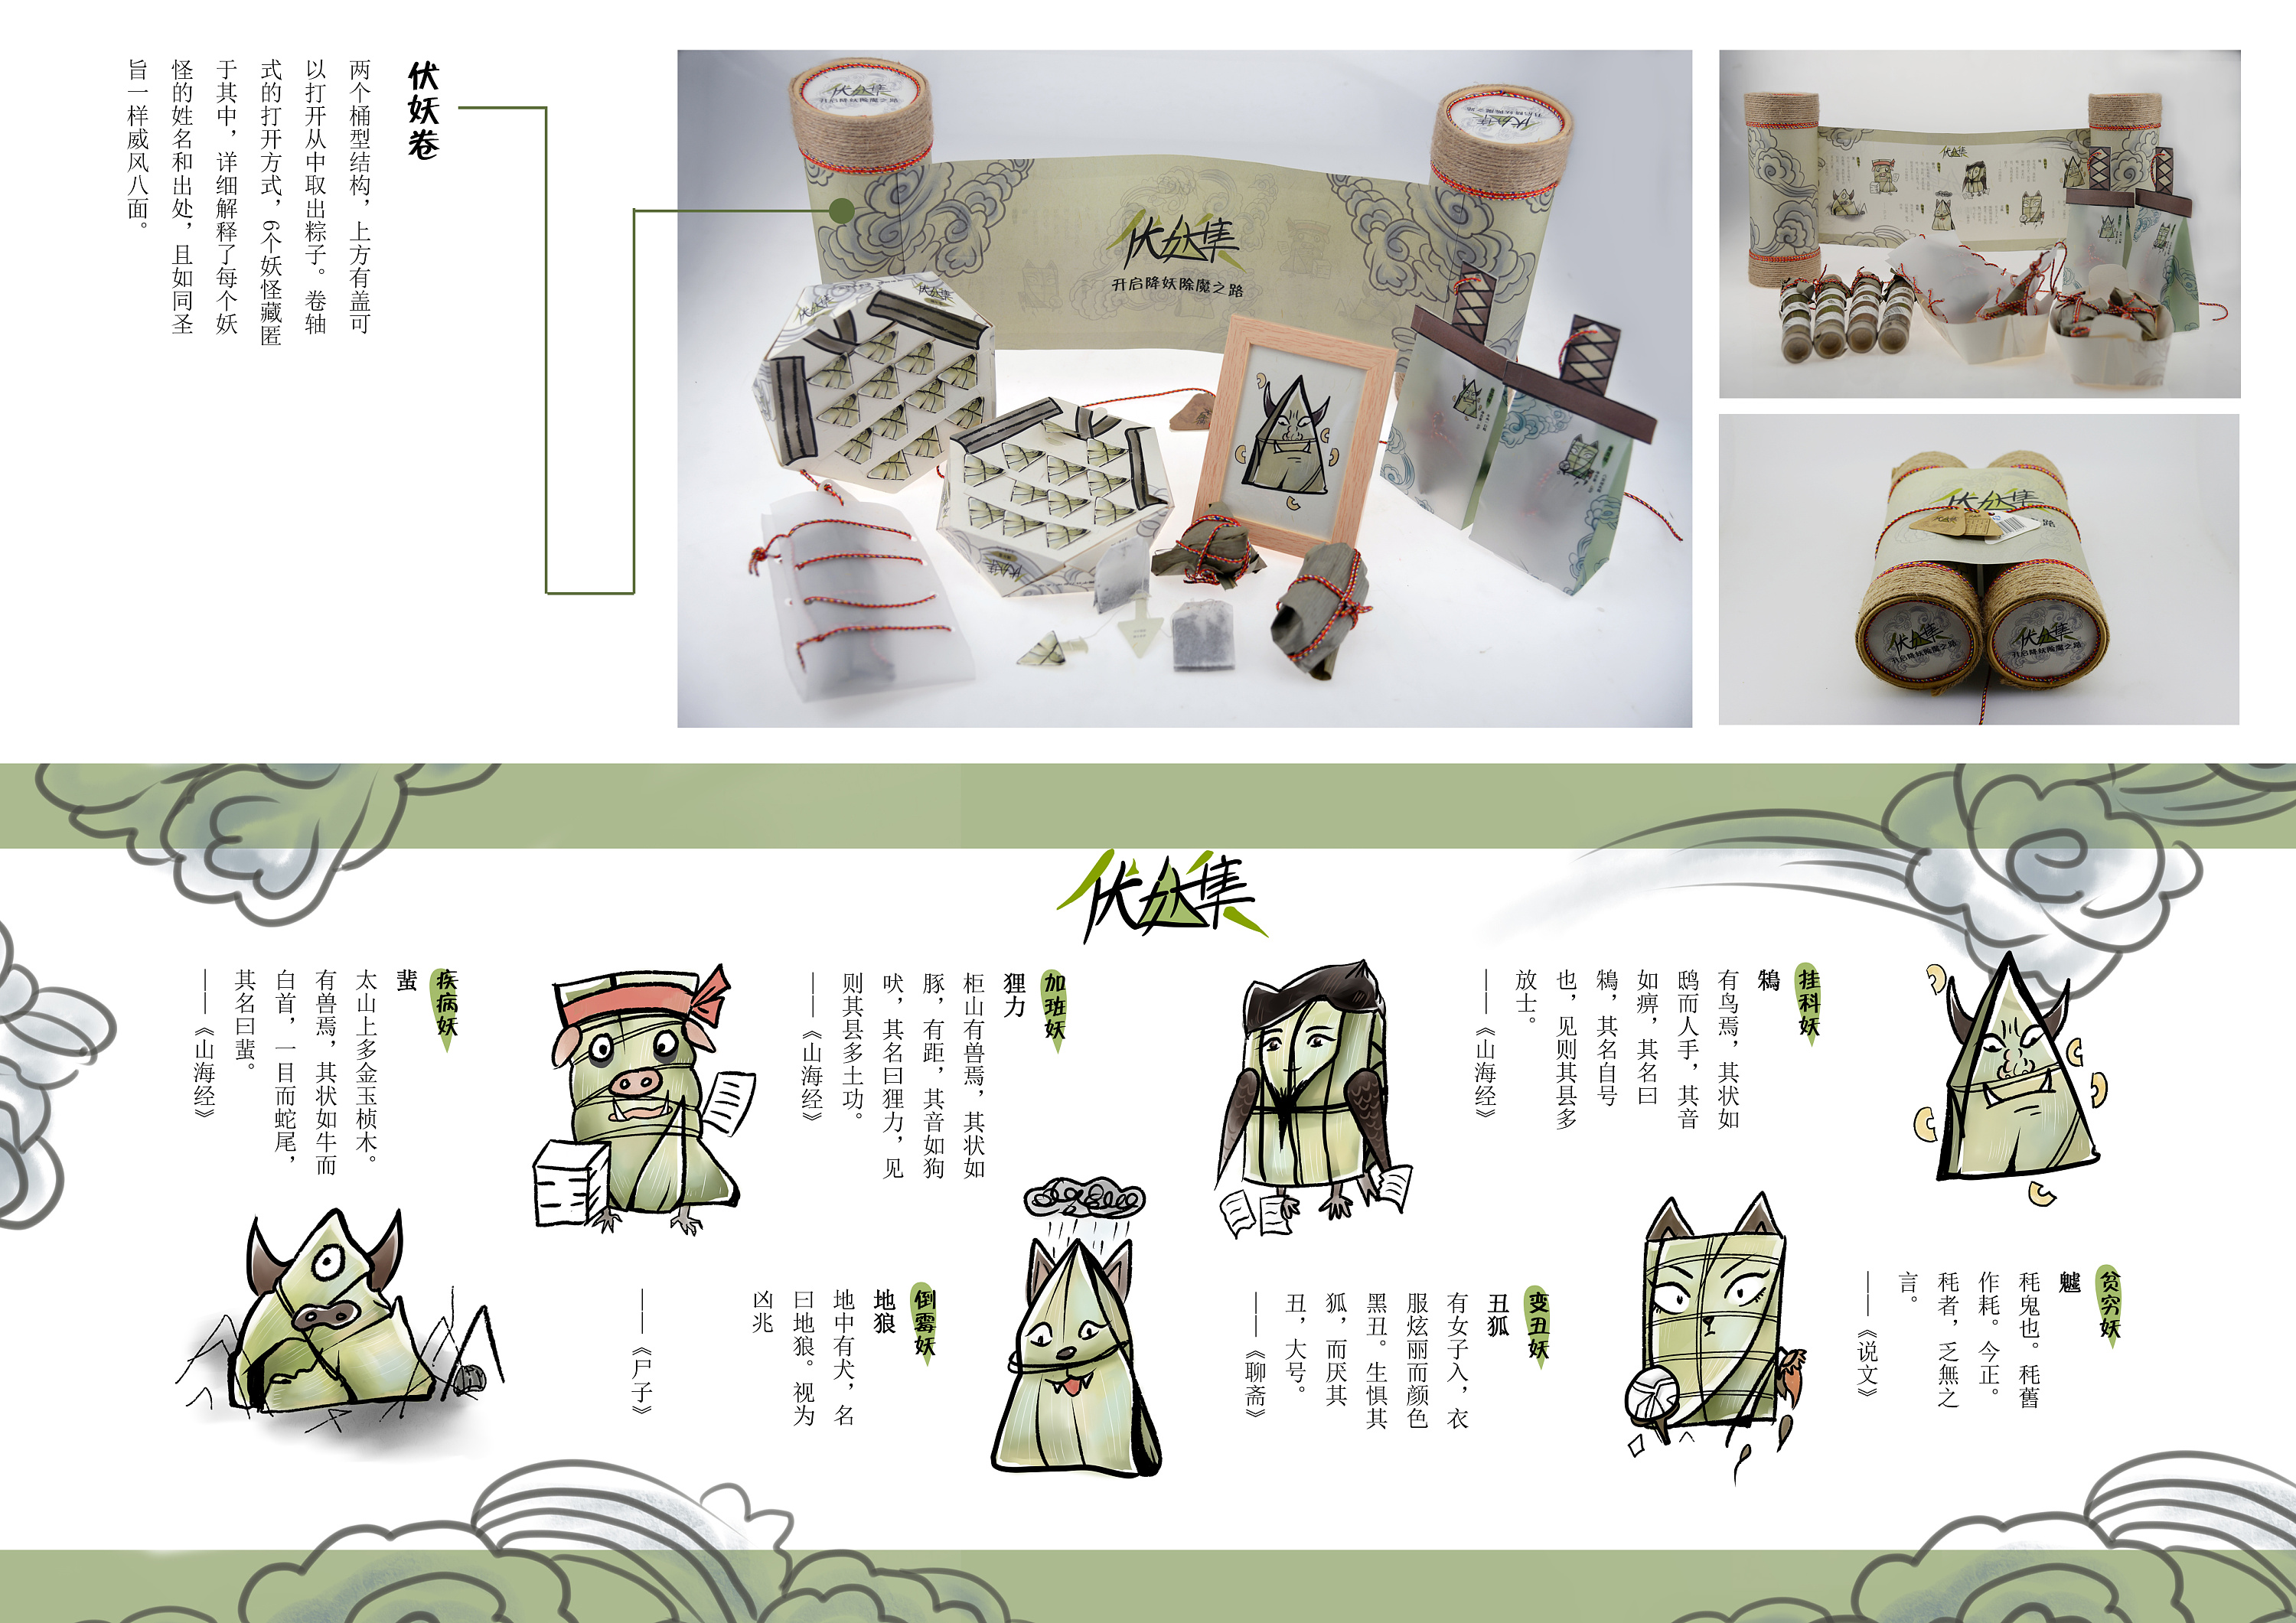 《伏妖记》粽子系列包装设计